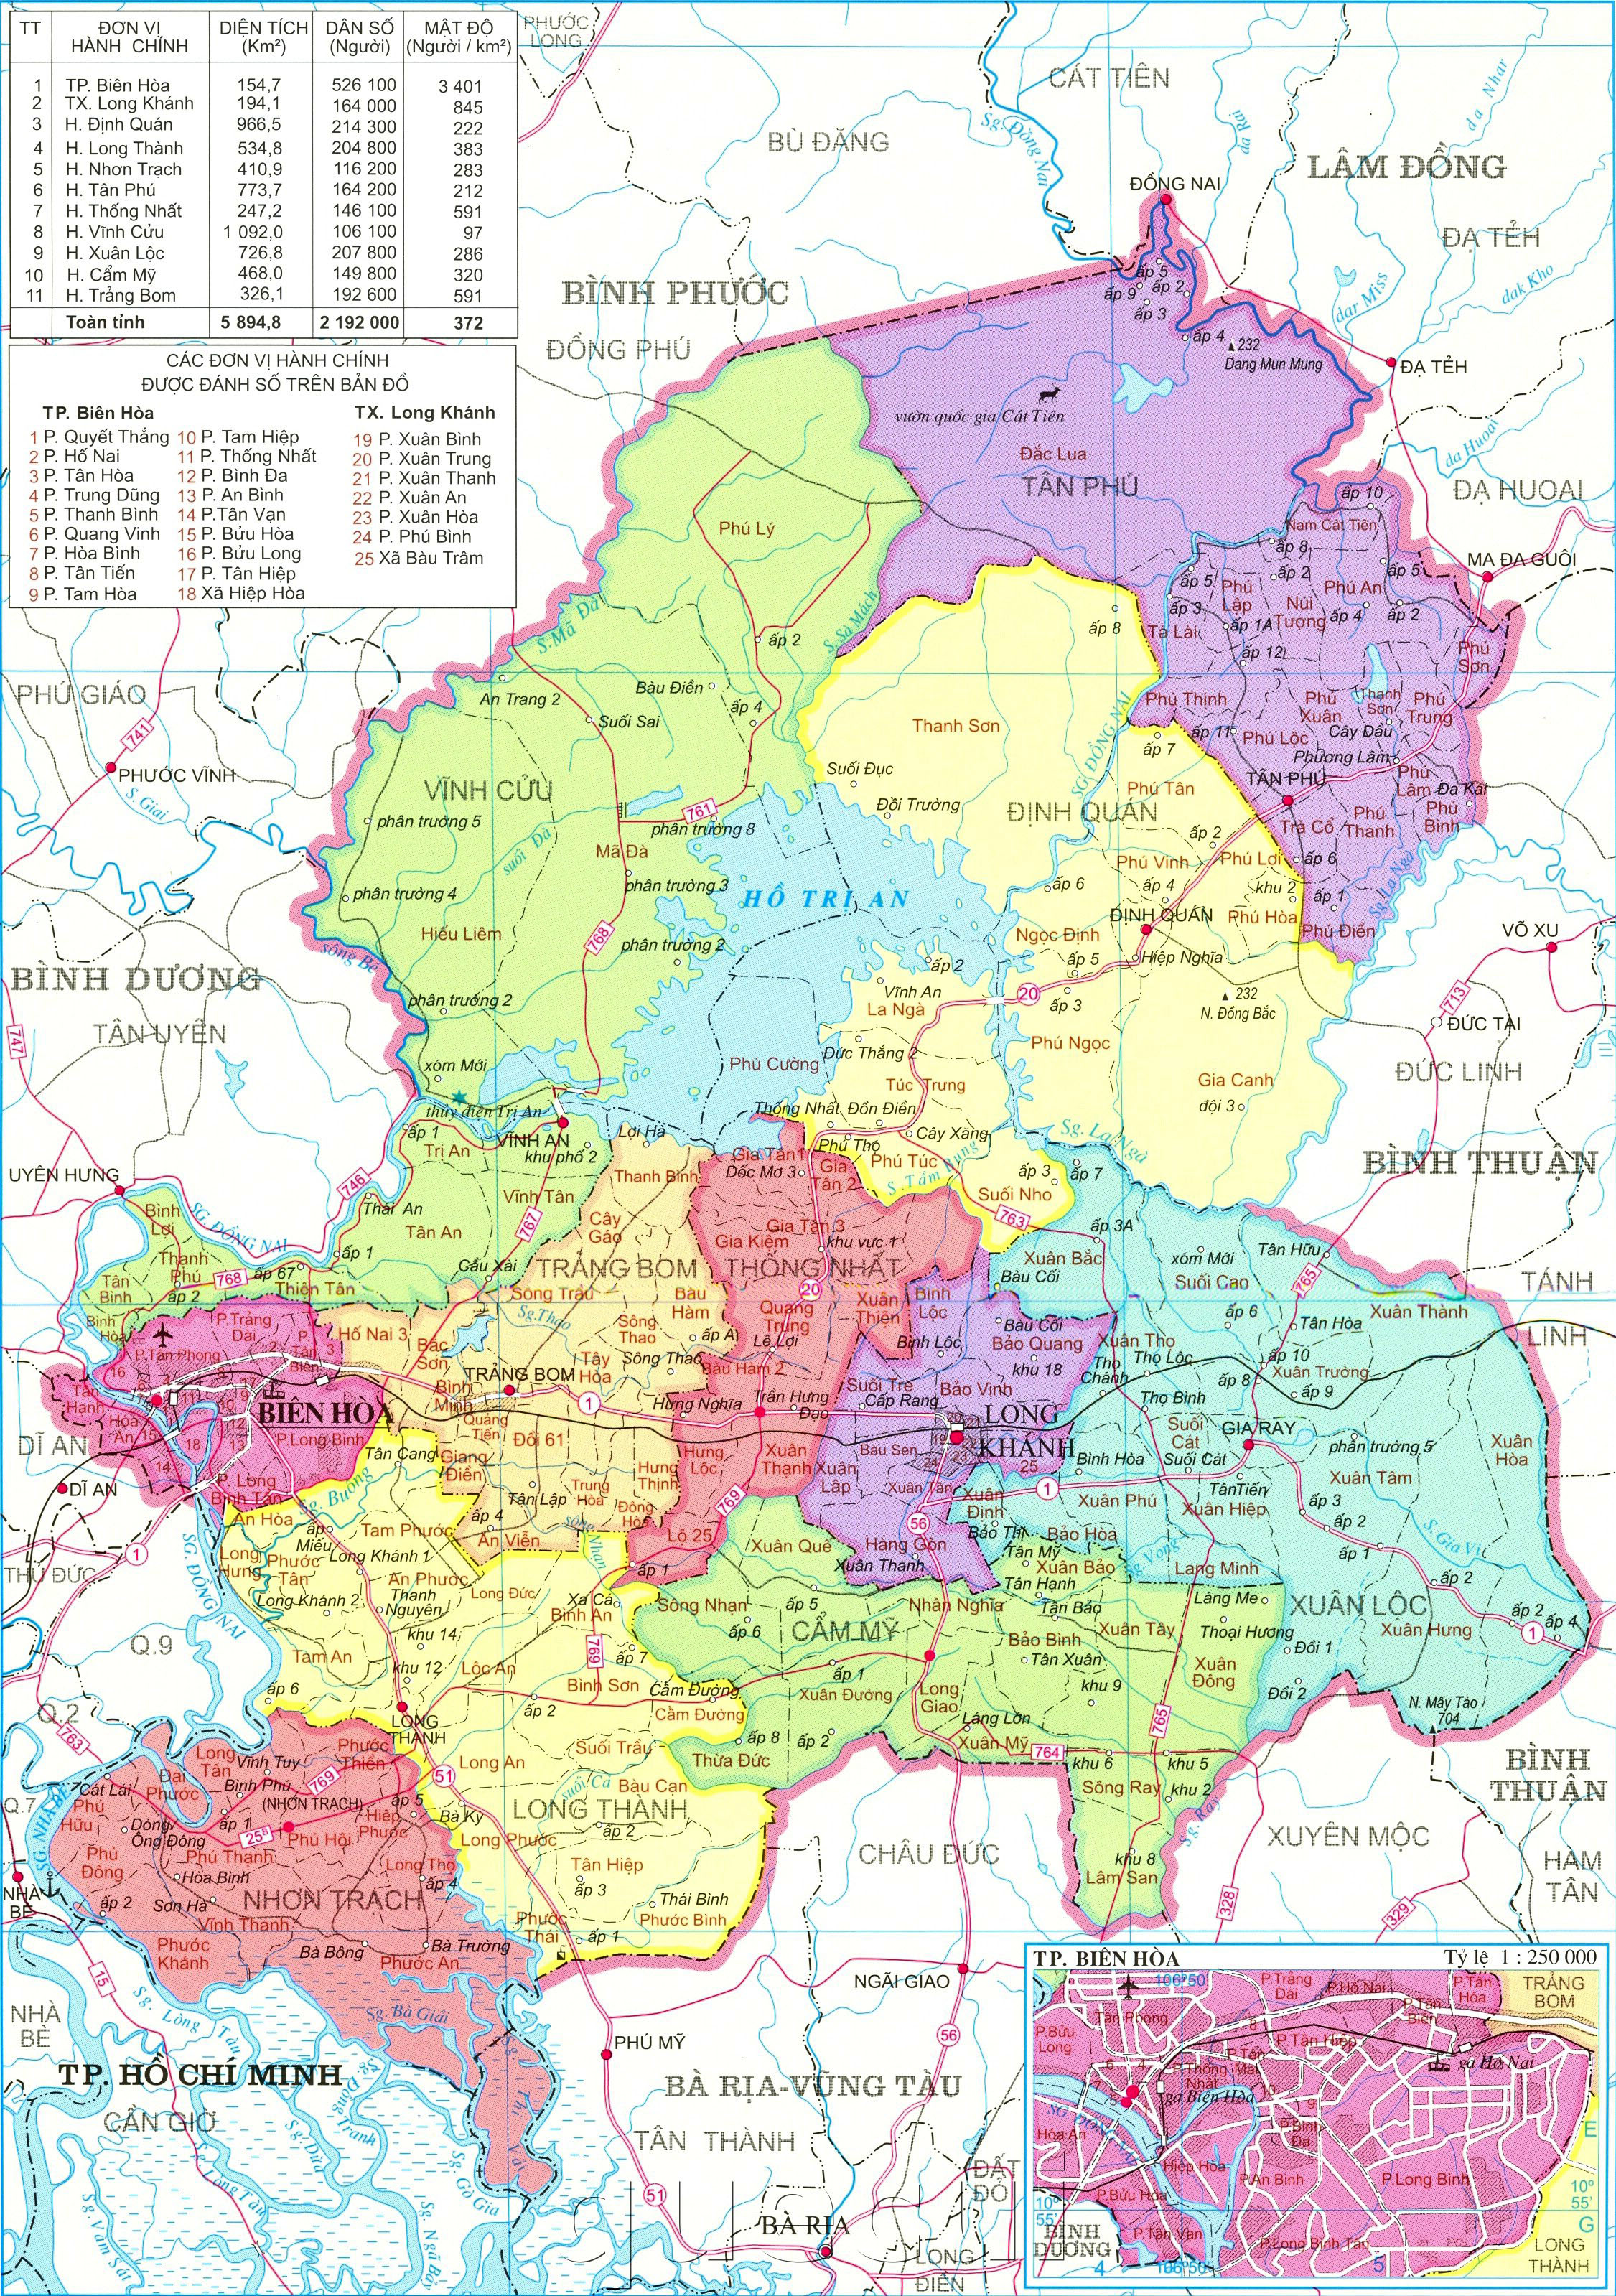 Bản đồ hành chính tỉnh Đồng Nai: Khám phá tất cả các khu vực và địa danh trong tỉnh Đồng Nai thông qua bản đồ hành chính chi tiết nhất. Đừng bỏ lỡ cơ hội tìm hiểu về vùng đất đầy tiềm năng này trong tương lai đầy hứa hẹn.